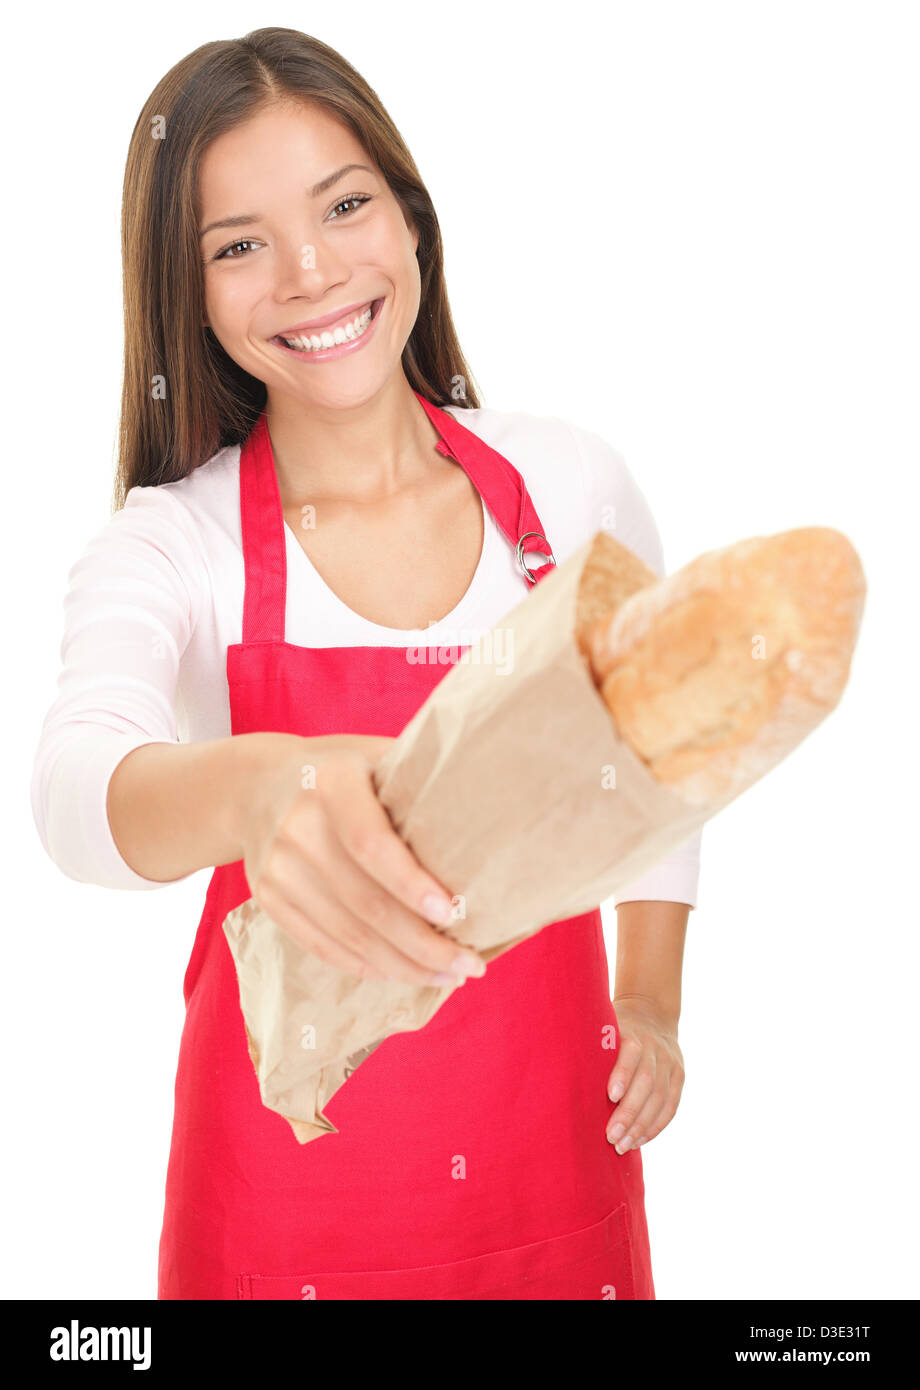 Porträt der schönen Mischlinge Kaukasier / asiatische Frau Verkäuferin geben Brot an Kunden isoliert auf weißem Hintergrund Stockfoto